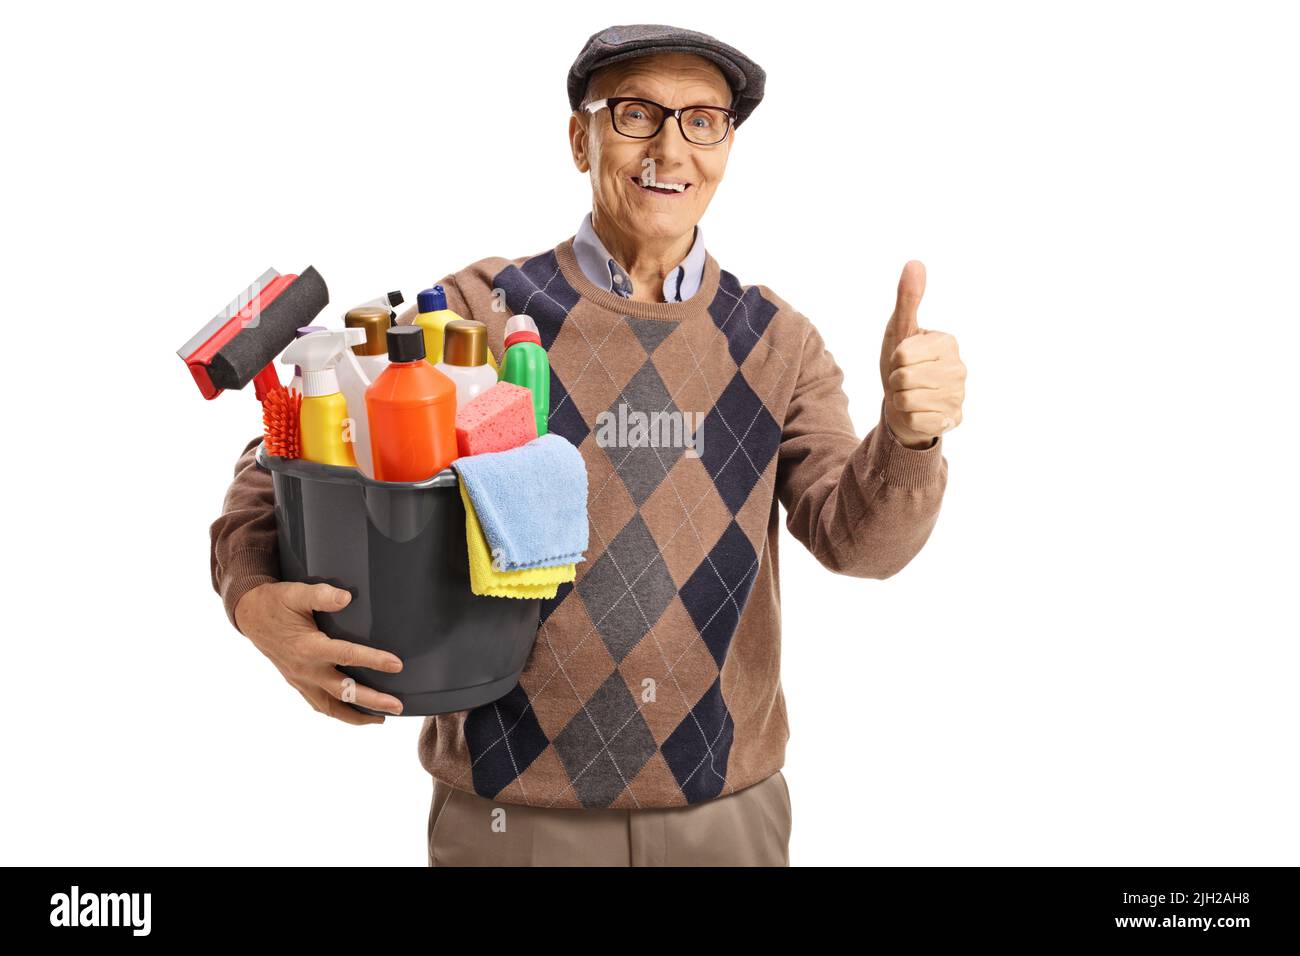 Uomo anziano che tiene un secchio con i rifornimenti di pulizia e che mostra i pollici isolati su sfondo bianco Foto Stock